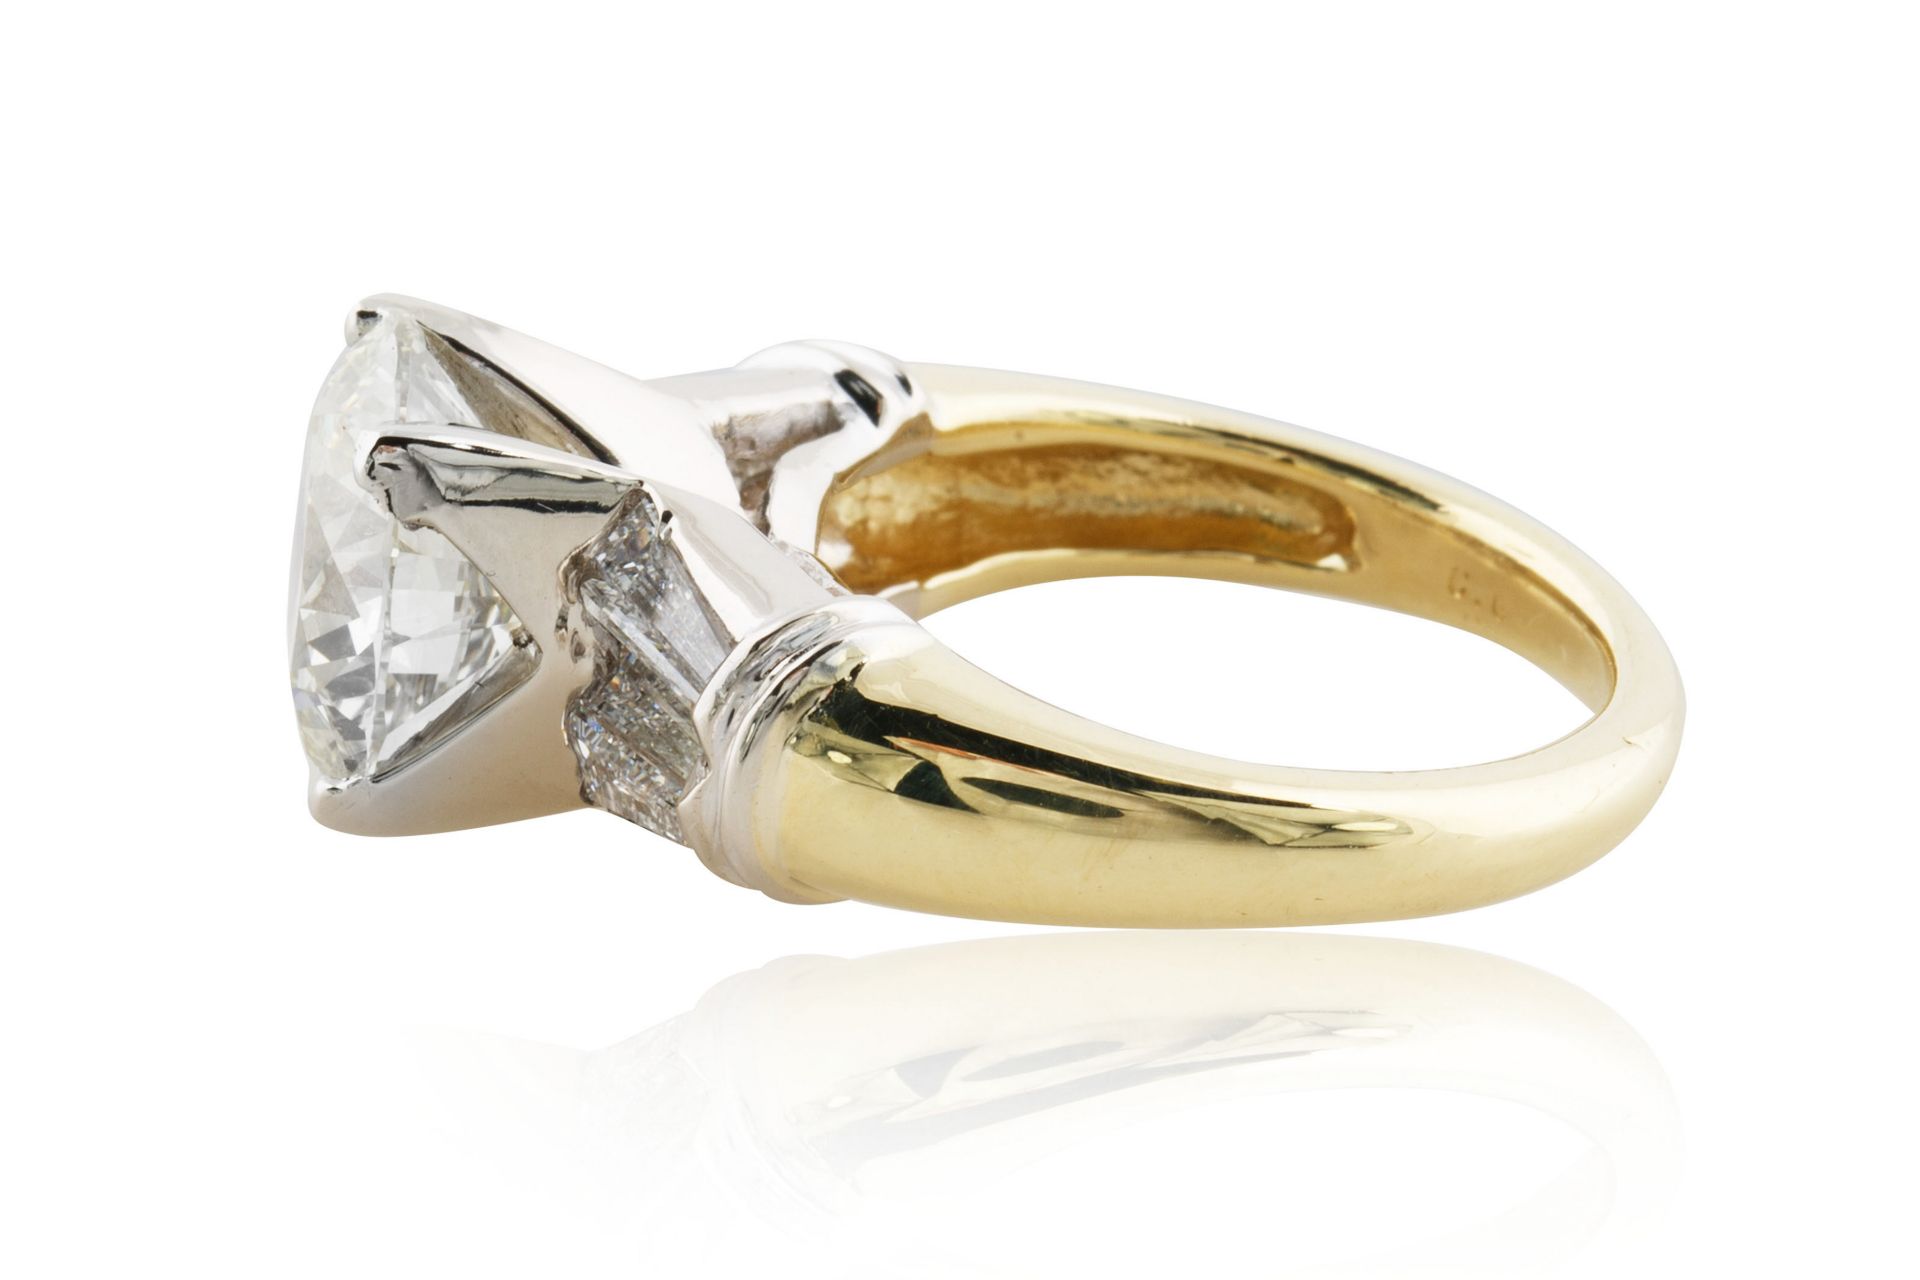 A 4.30 CT BRILLIANT ROUND CUT DIAMOND RING SET IN 18KT GOLD BAND - Bild 2 aus 7